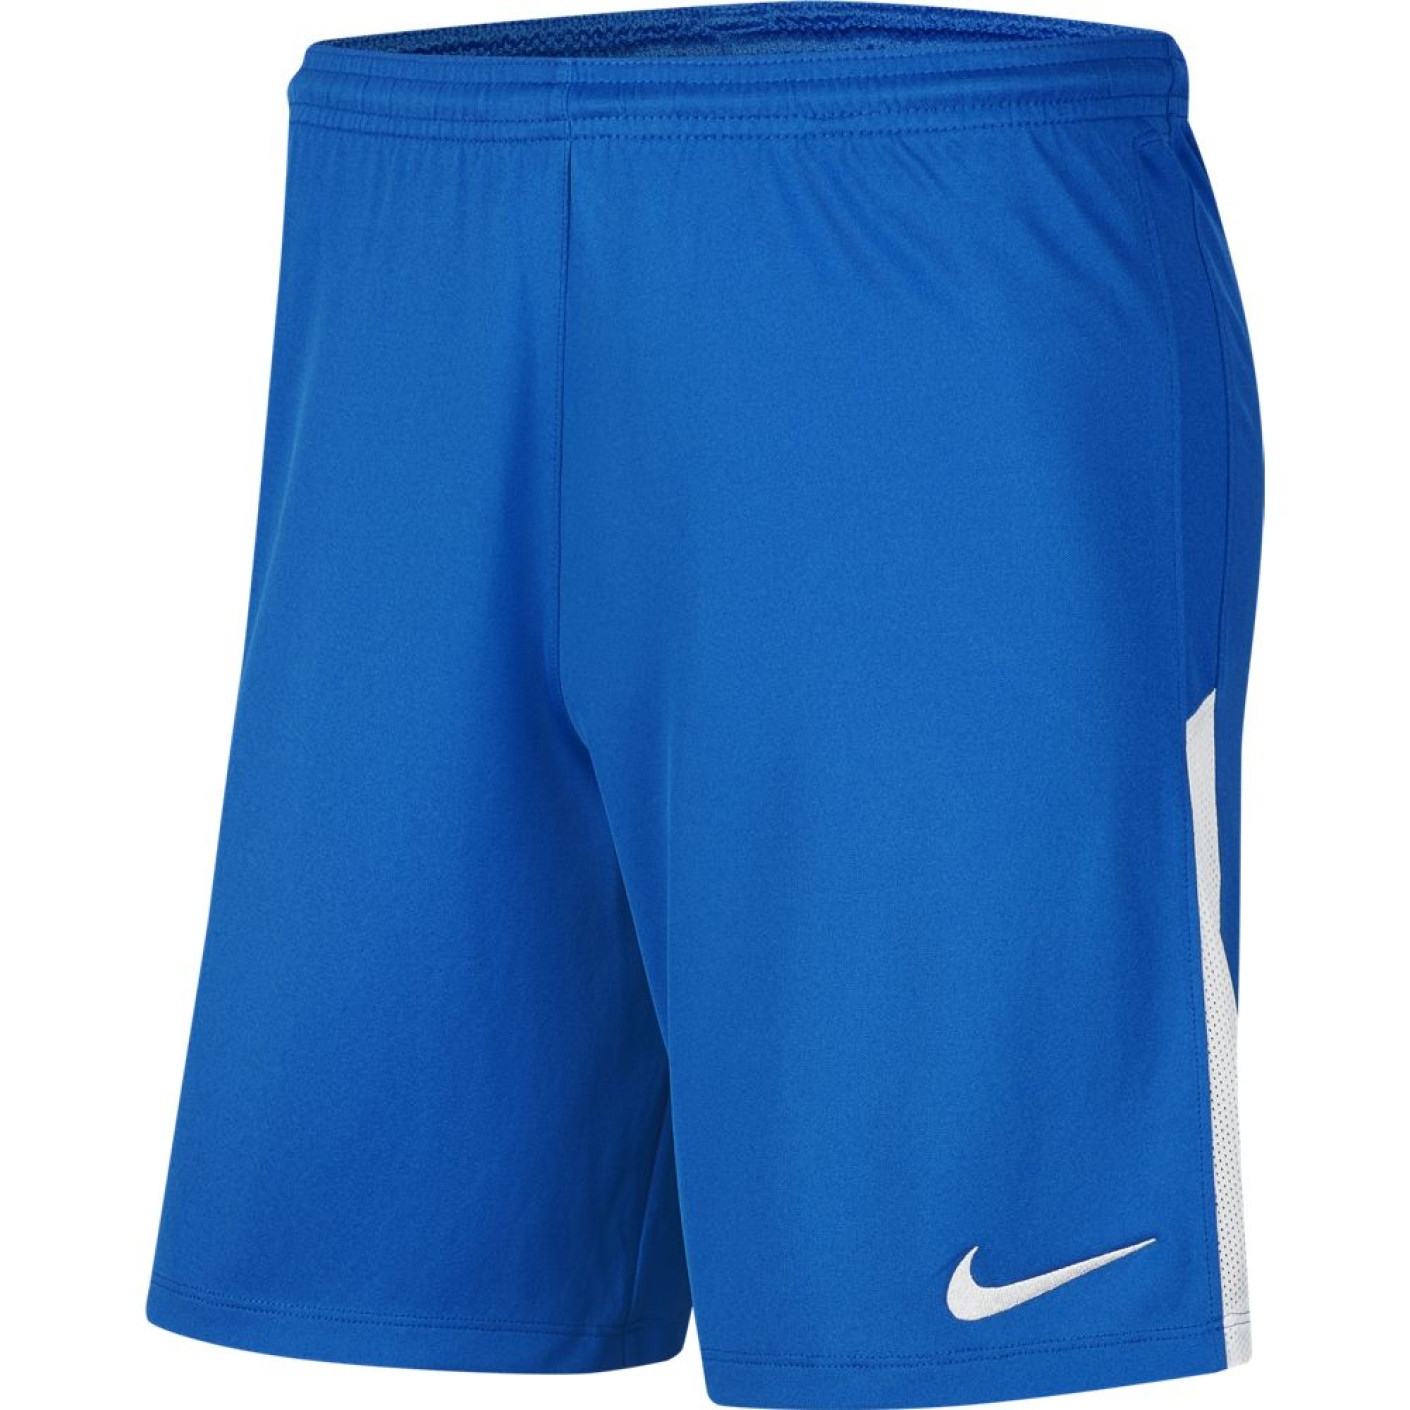 Nike League II Trainingsbroekje Dri-Fit Royal Blauw Wit